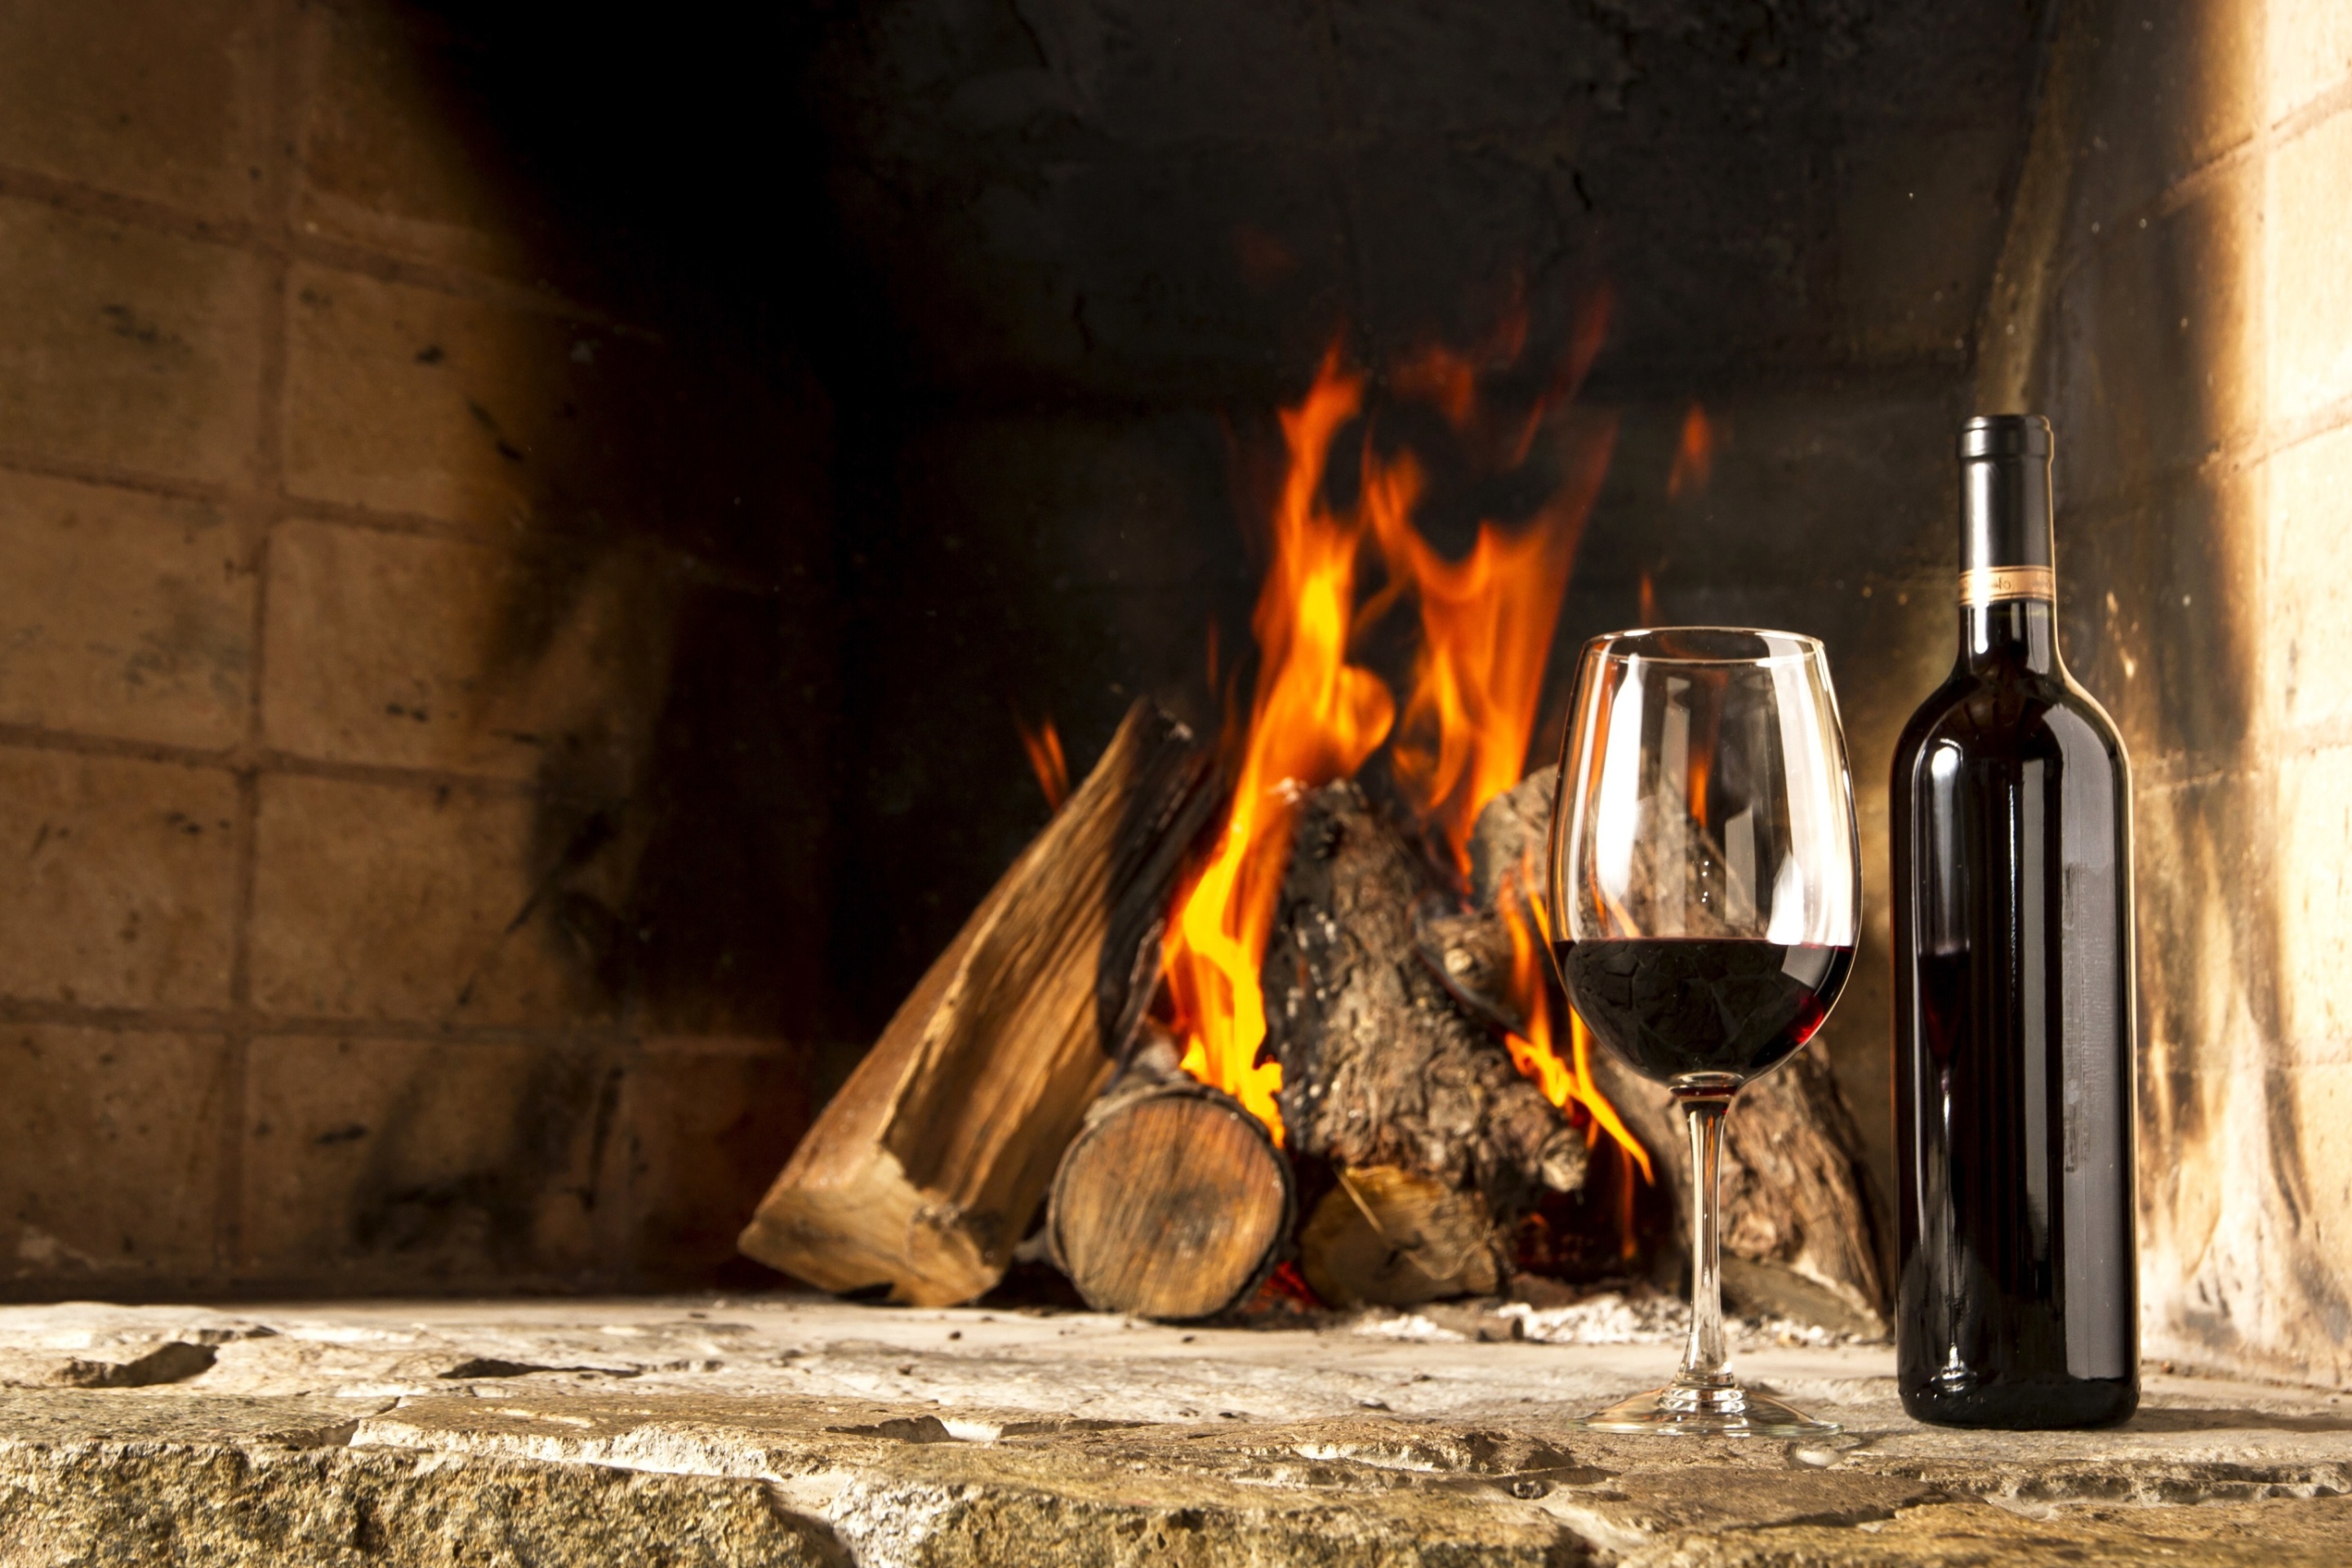 Обои Wine and fireplace 2880x1920